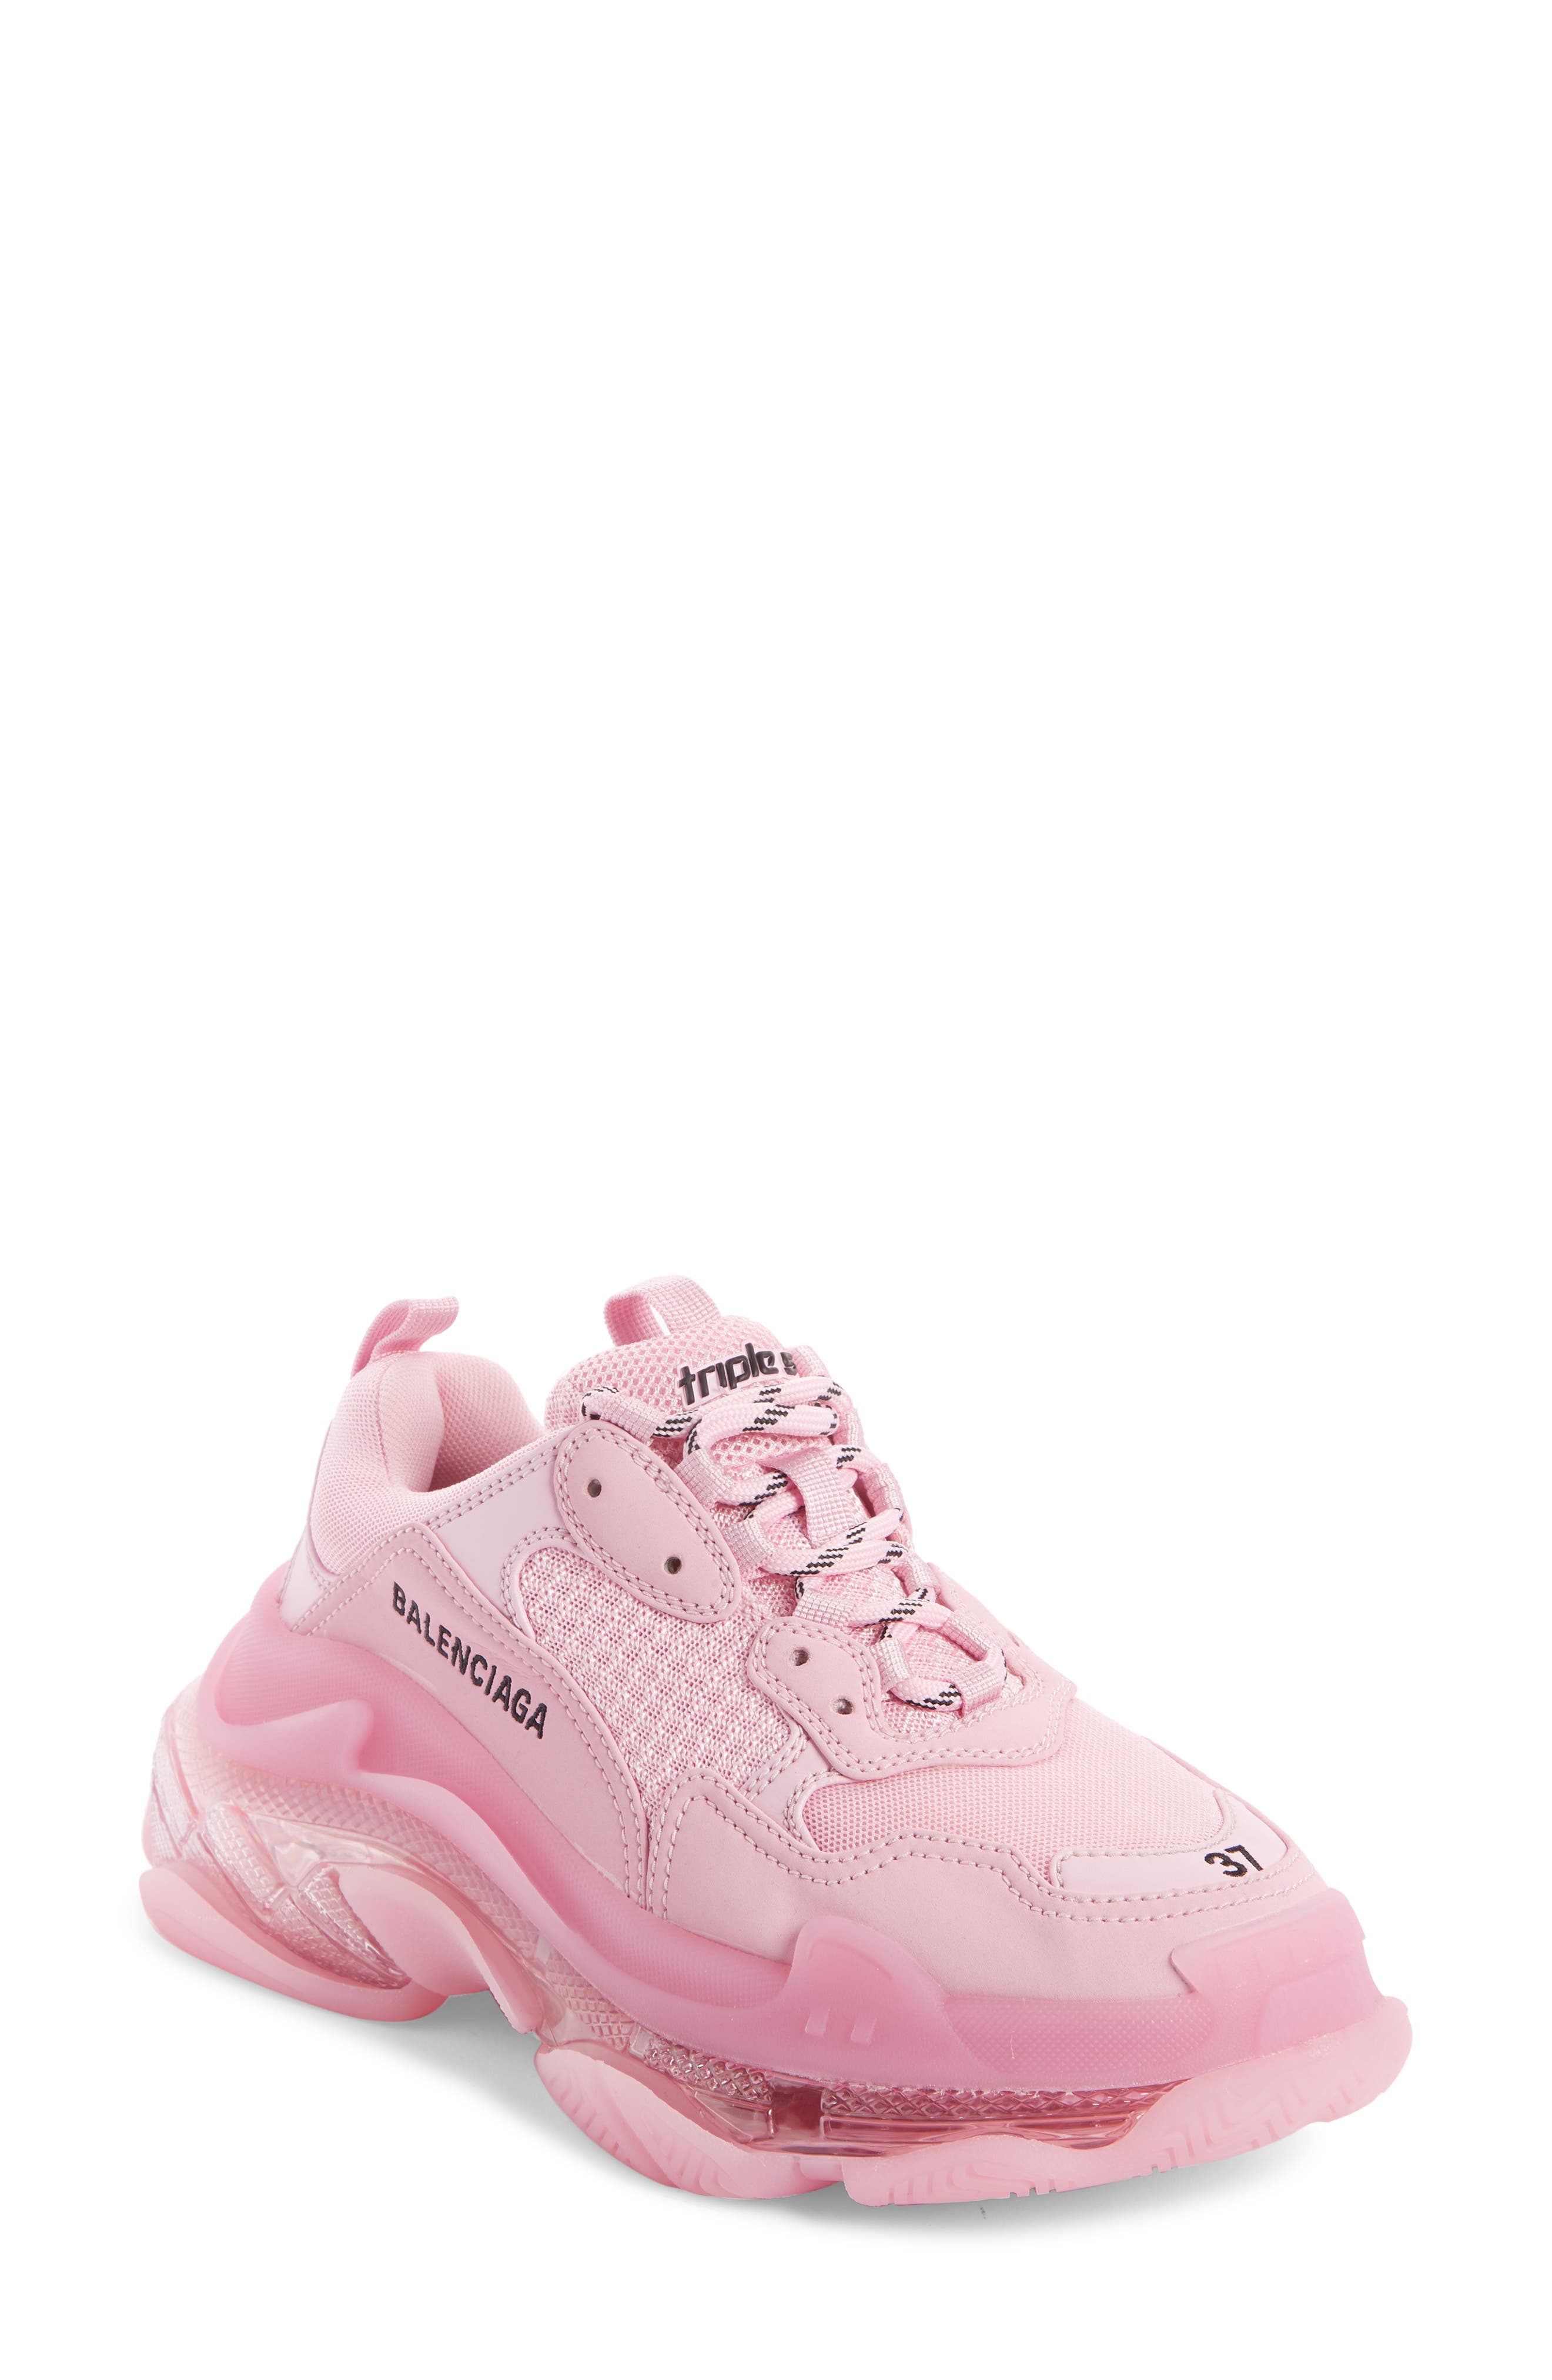 mens pink balenciaga shoes